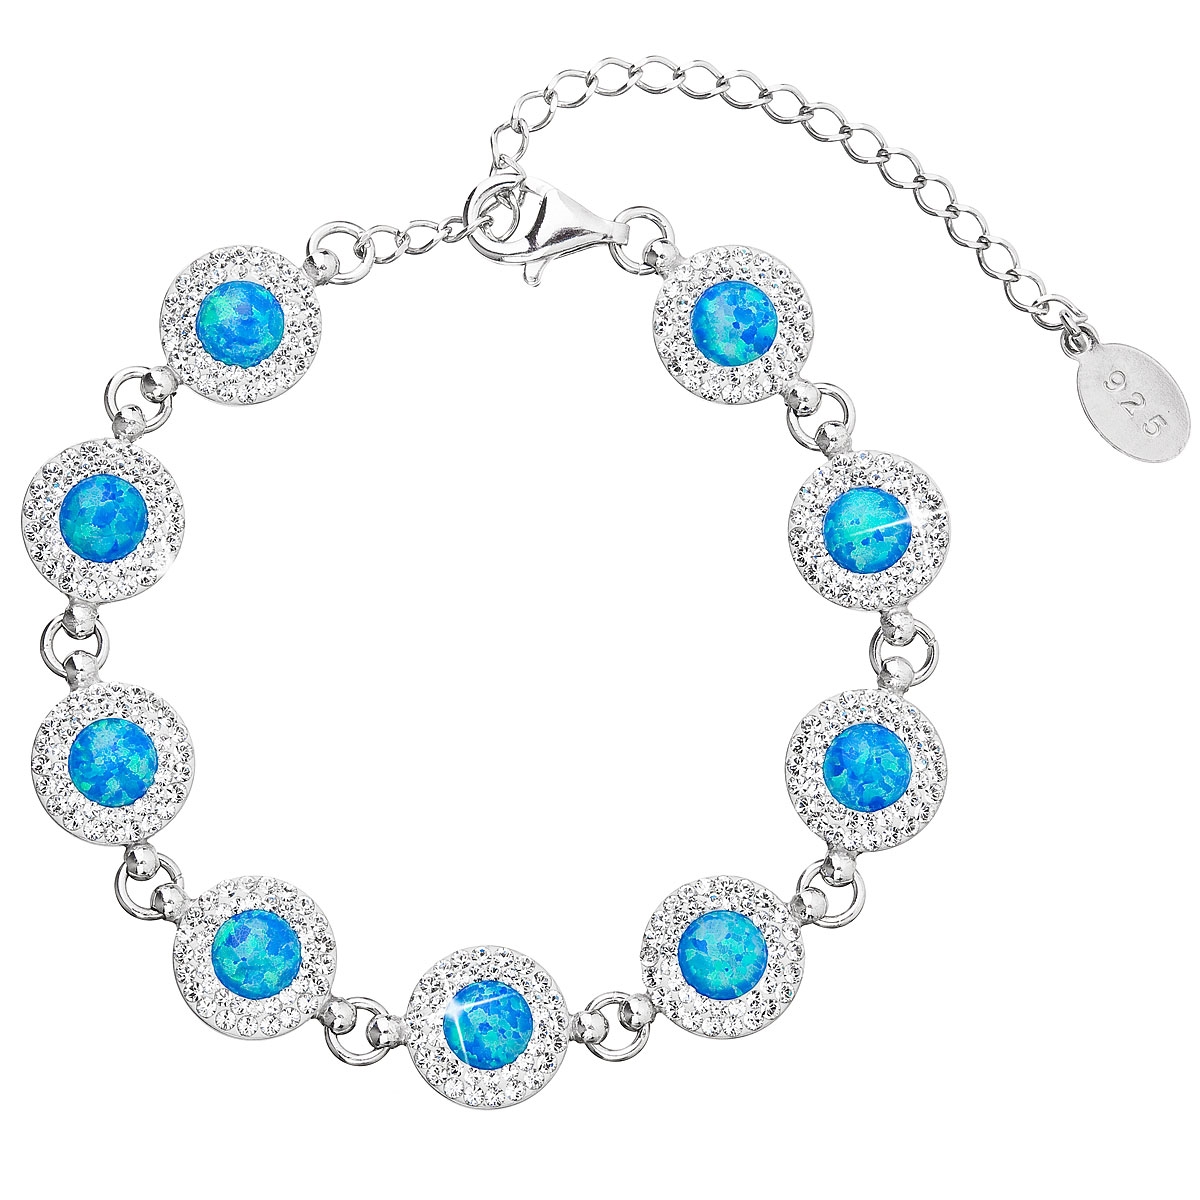 Strieborný náramok s kryštálmi Crystals from Swarovski ® a modrými opálmi